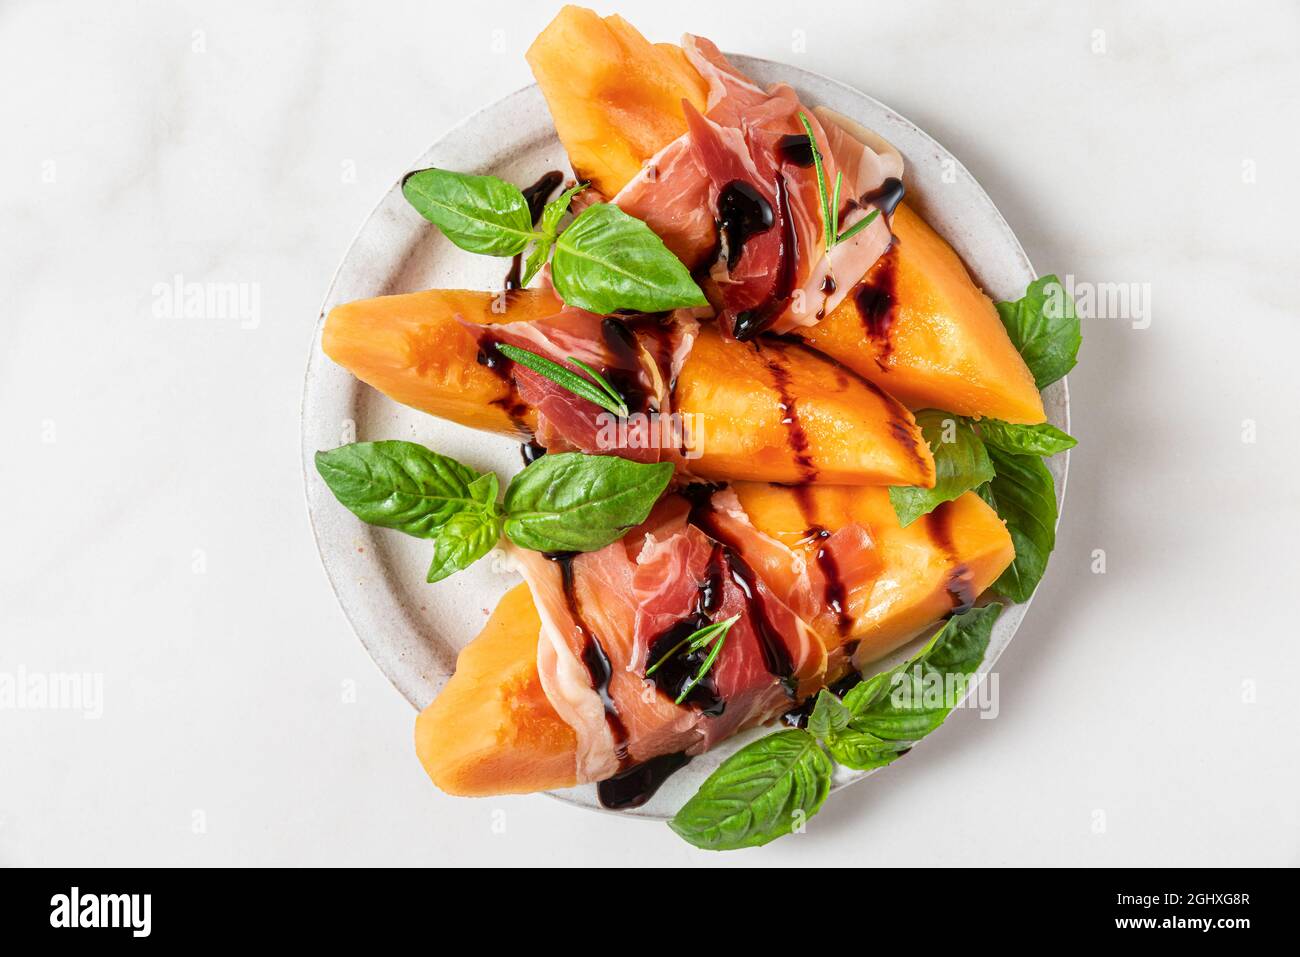 Melone cantalupo fettine con prosciutto, salsa all'aceto balsamico e basilico in un piatto su sfondo bianco. Antipasto italiano. Vista dall'alto. Foo sano Foto Stock